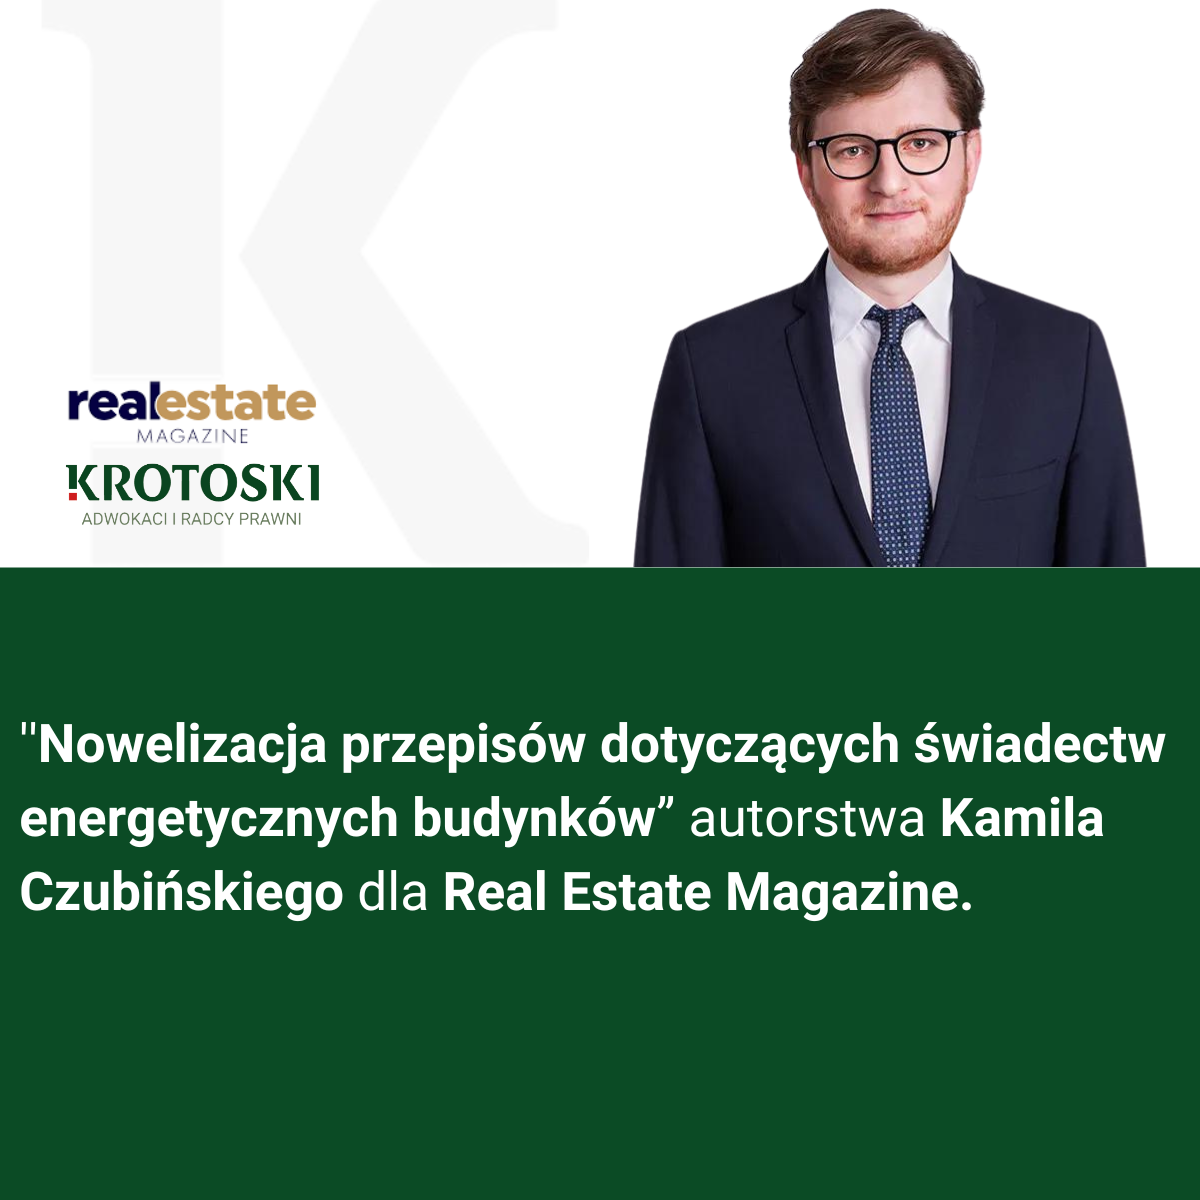 ''Nowelizacja przepisów dotyczących świadectw energetycznych budynków” autorstwa Kamila Czubińskiego dla Real Estate Magazine